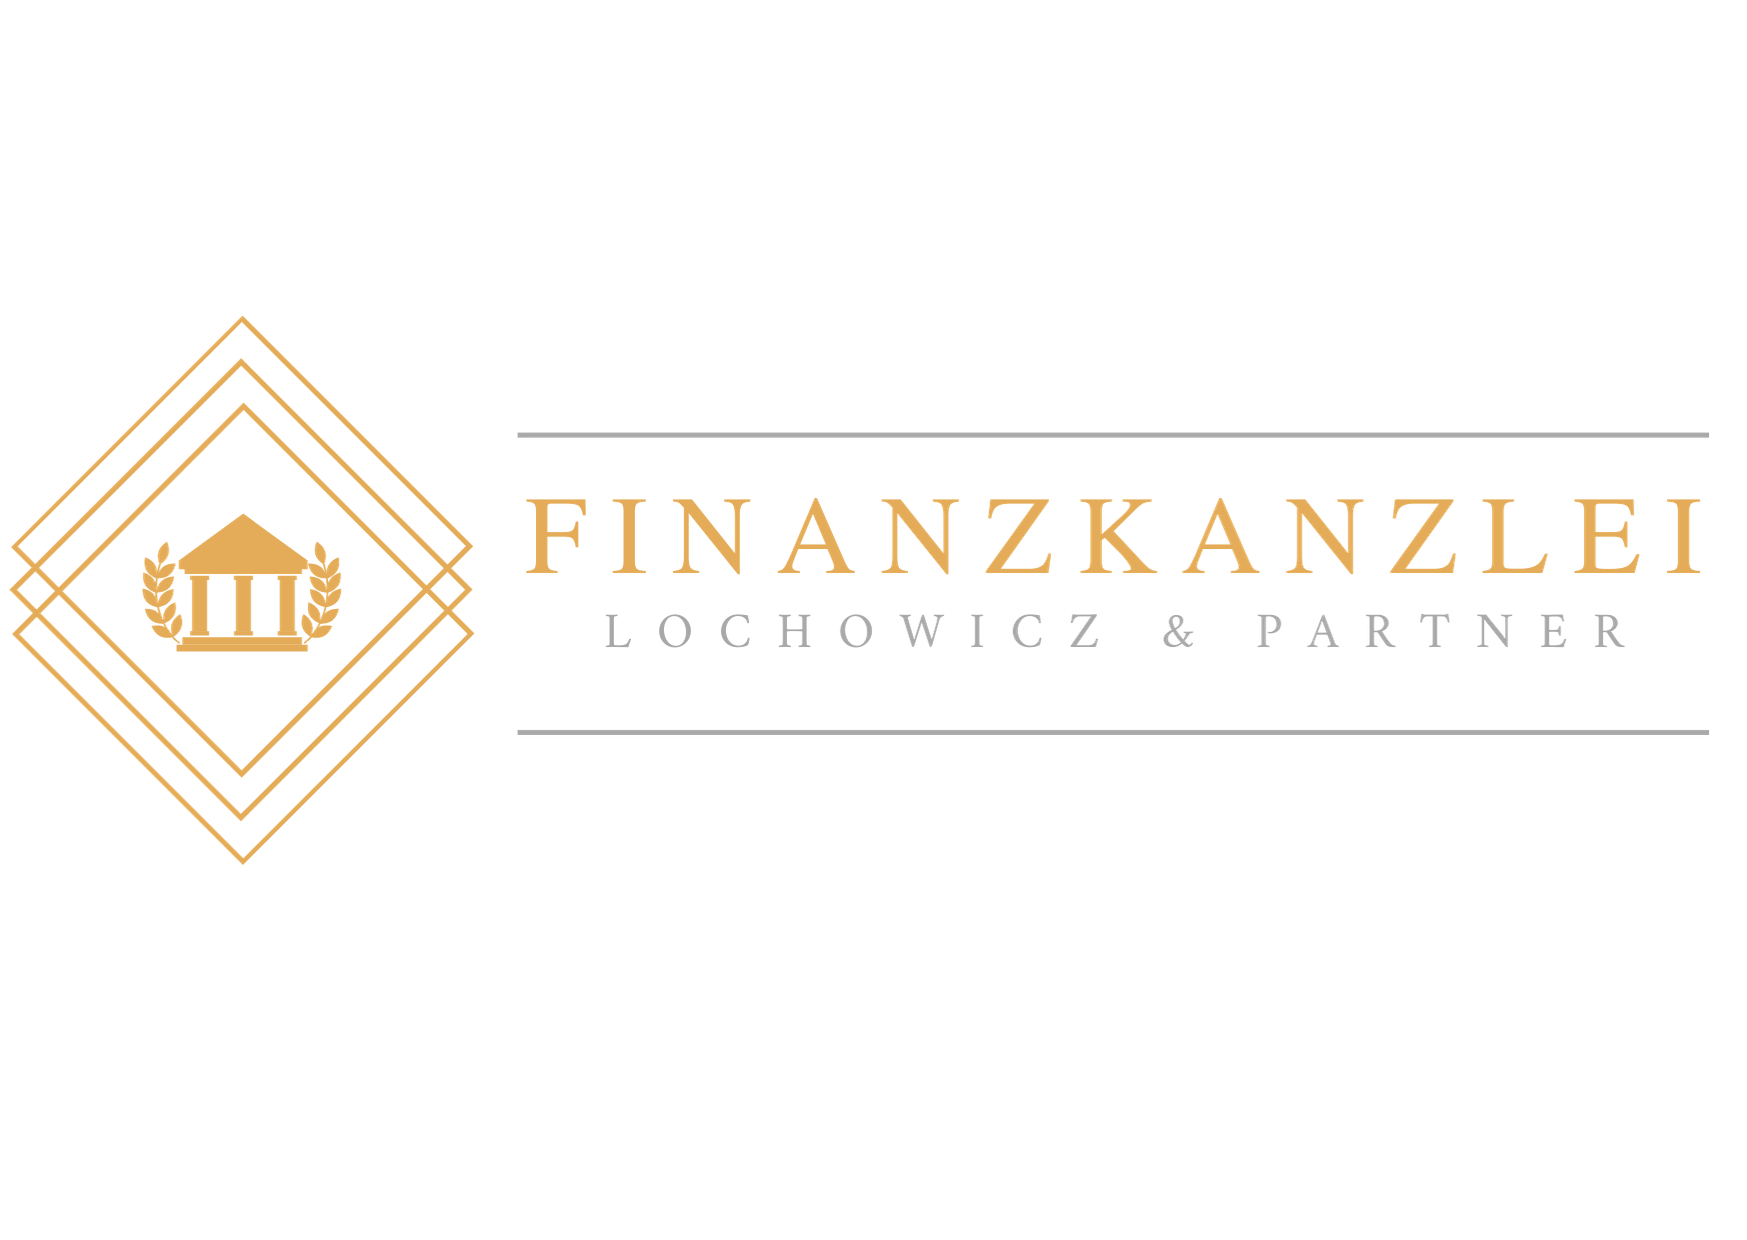 Finanzkanzlei lochowicz & Partner